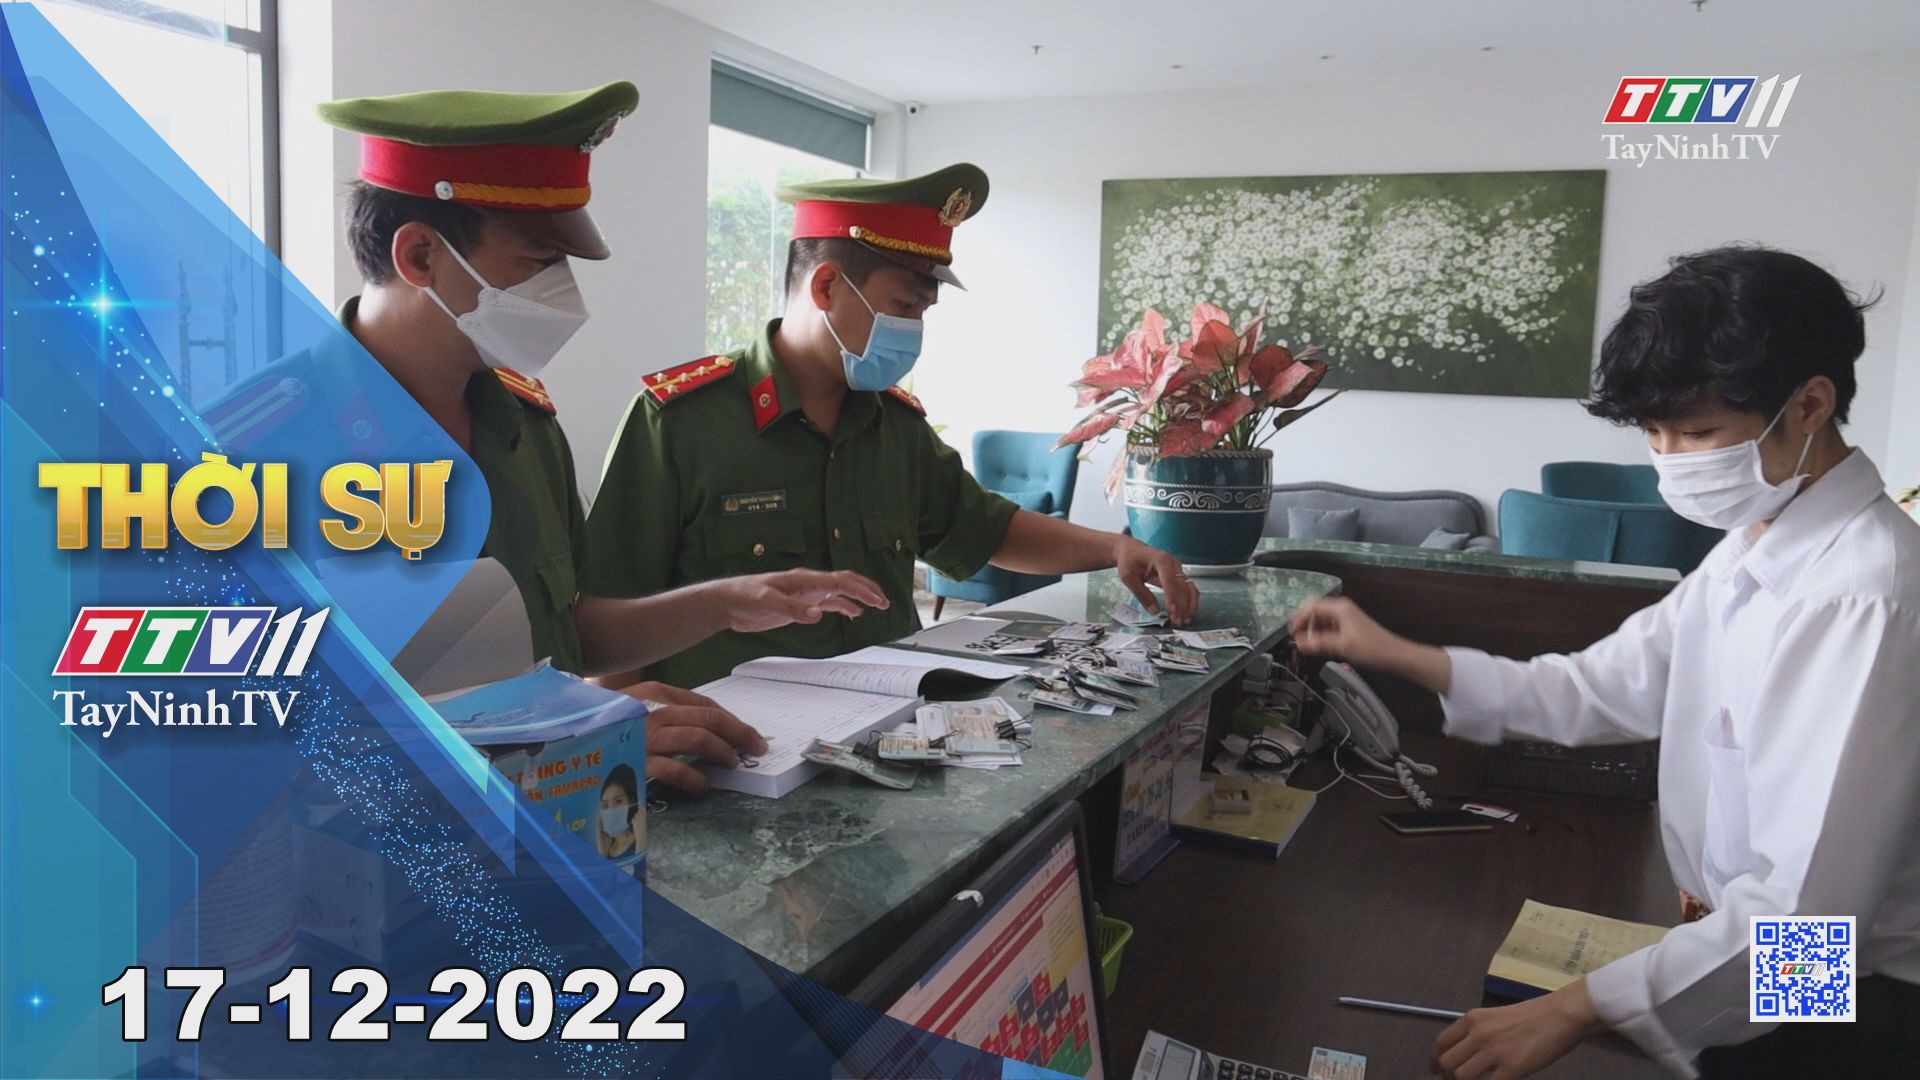 Thời sự Tây Ninh 17-12-2022 | Tin tức hôm nay | TayNinhTV